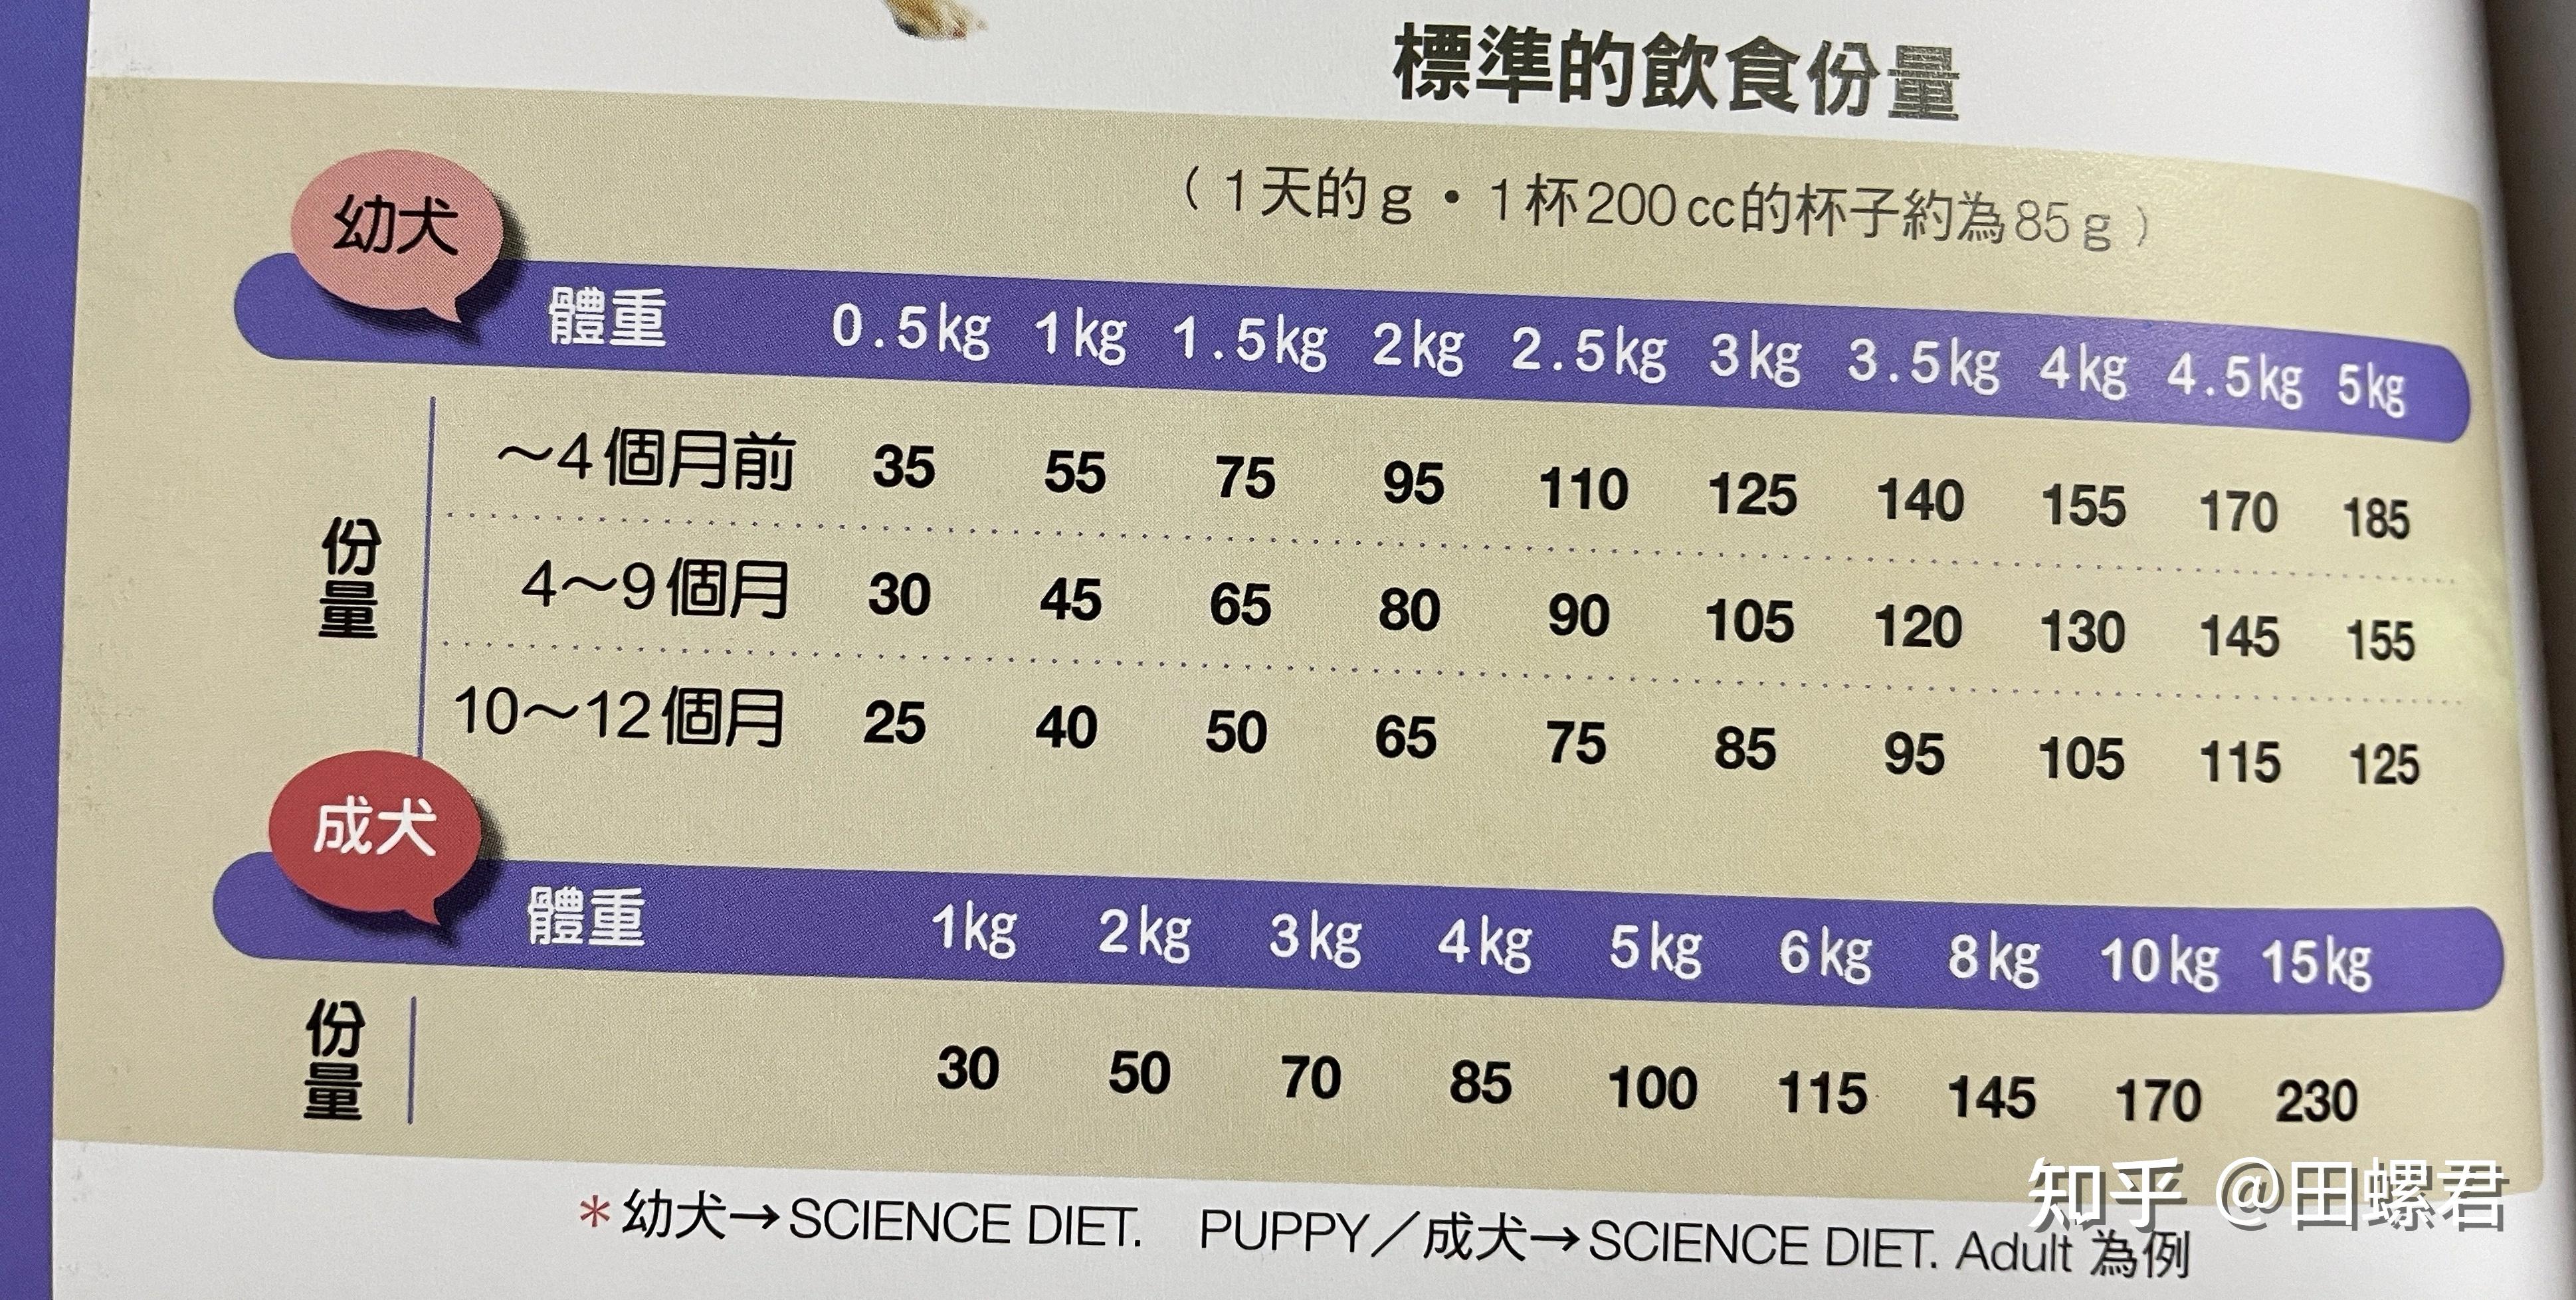 您家柴犬饭量大吗? 